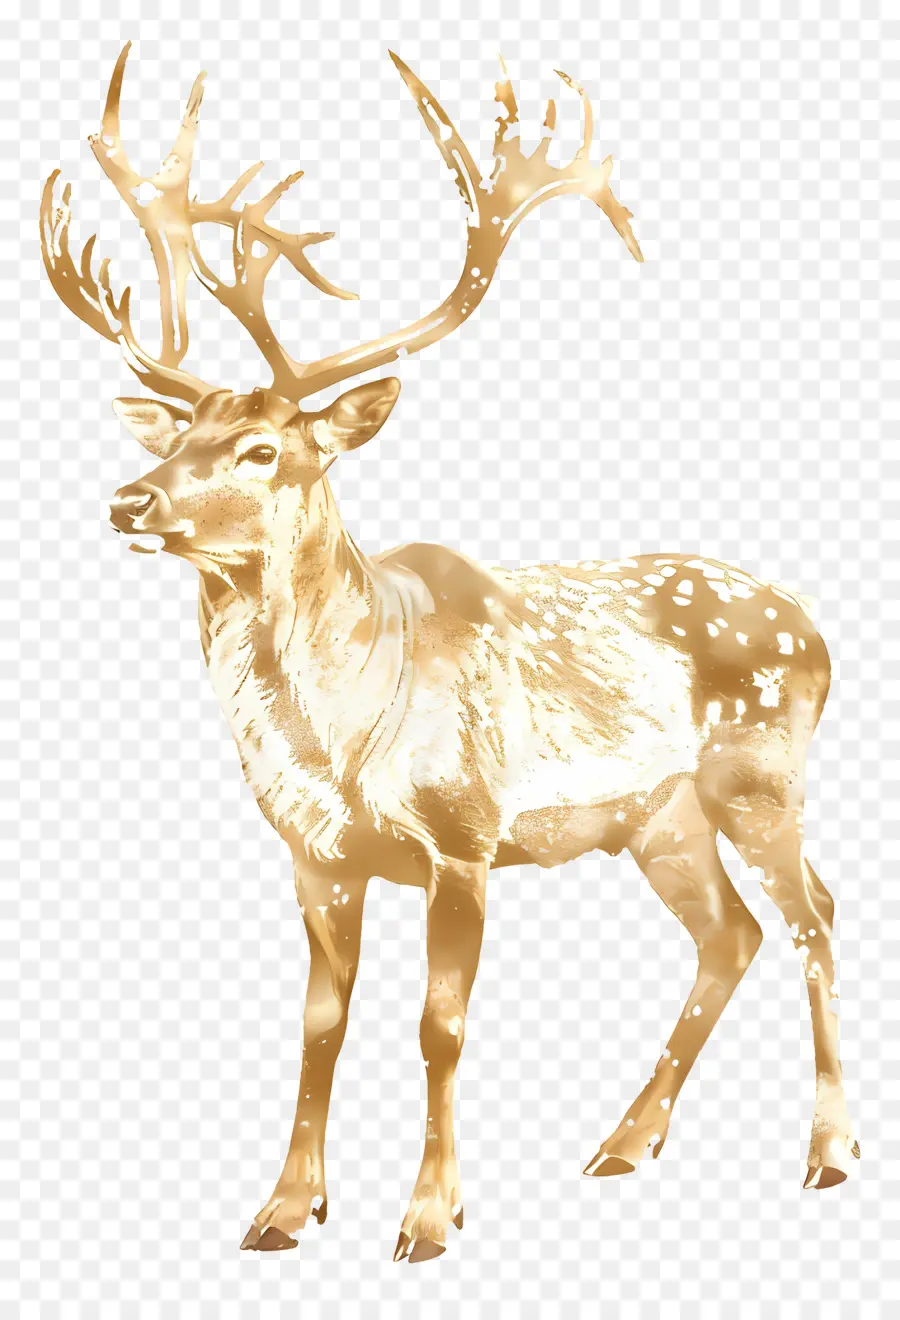 Golden Reindeer Golden Deer Động vật hoang dã Majestic Antlers - Con nai vàng gầm gừ trên chân sau